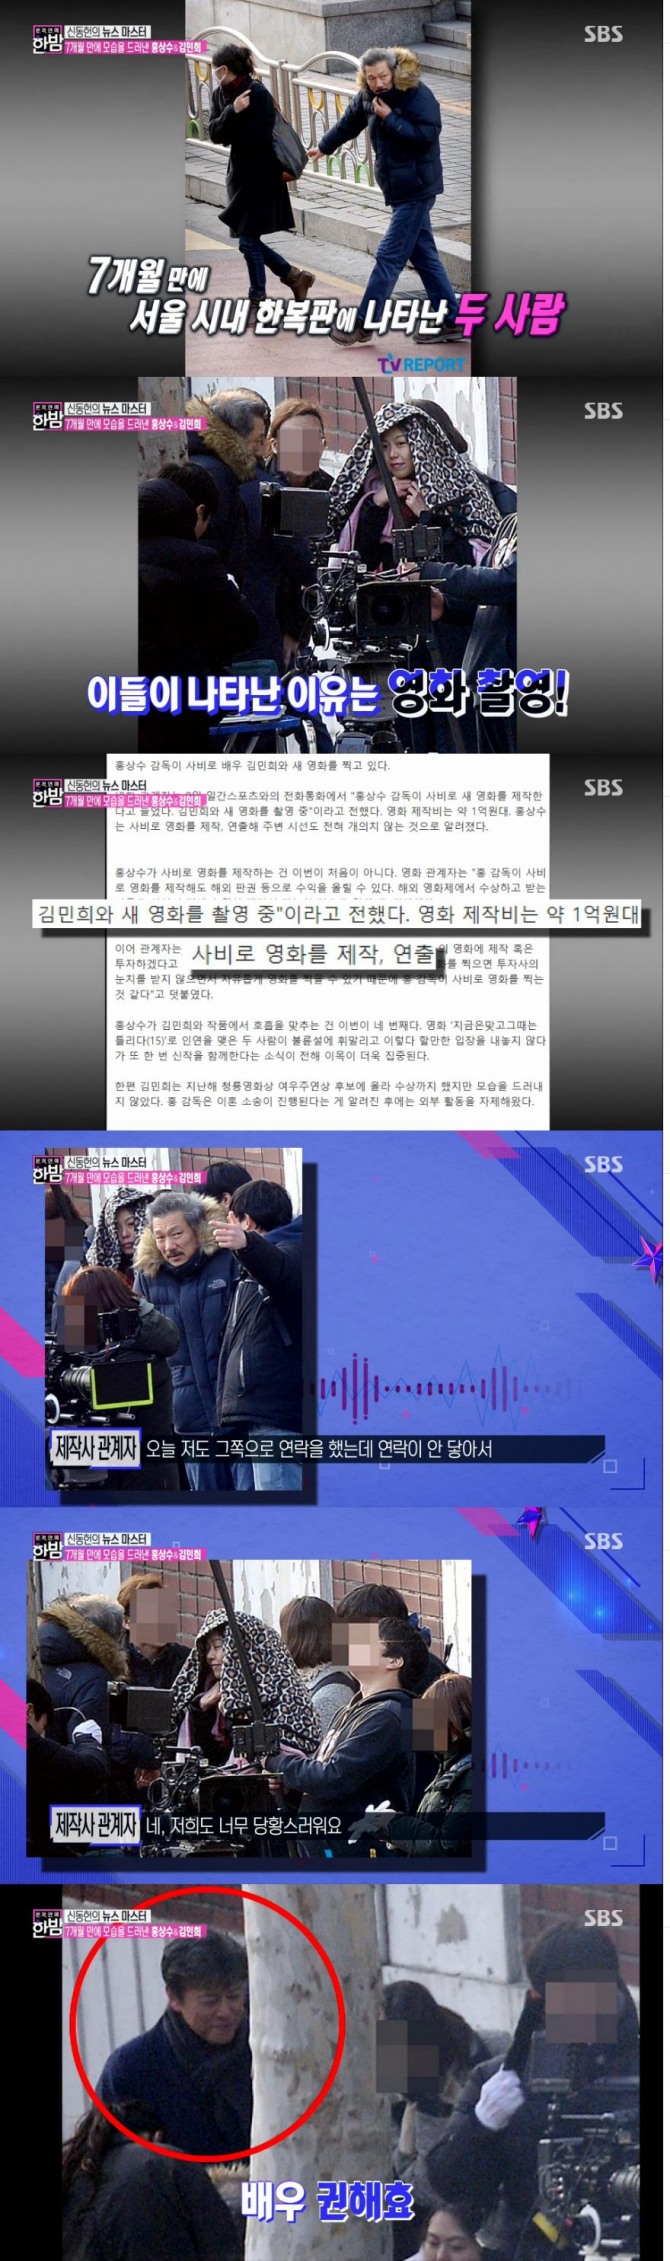 10일 방송된 SBS '본격연예 한밤'에서는 홍상수 감독과 배우 김민희씨의 산작 영화 촬영 현장이 소개됐다./사진=SBS 방송 캡처